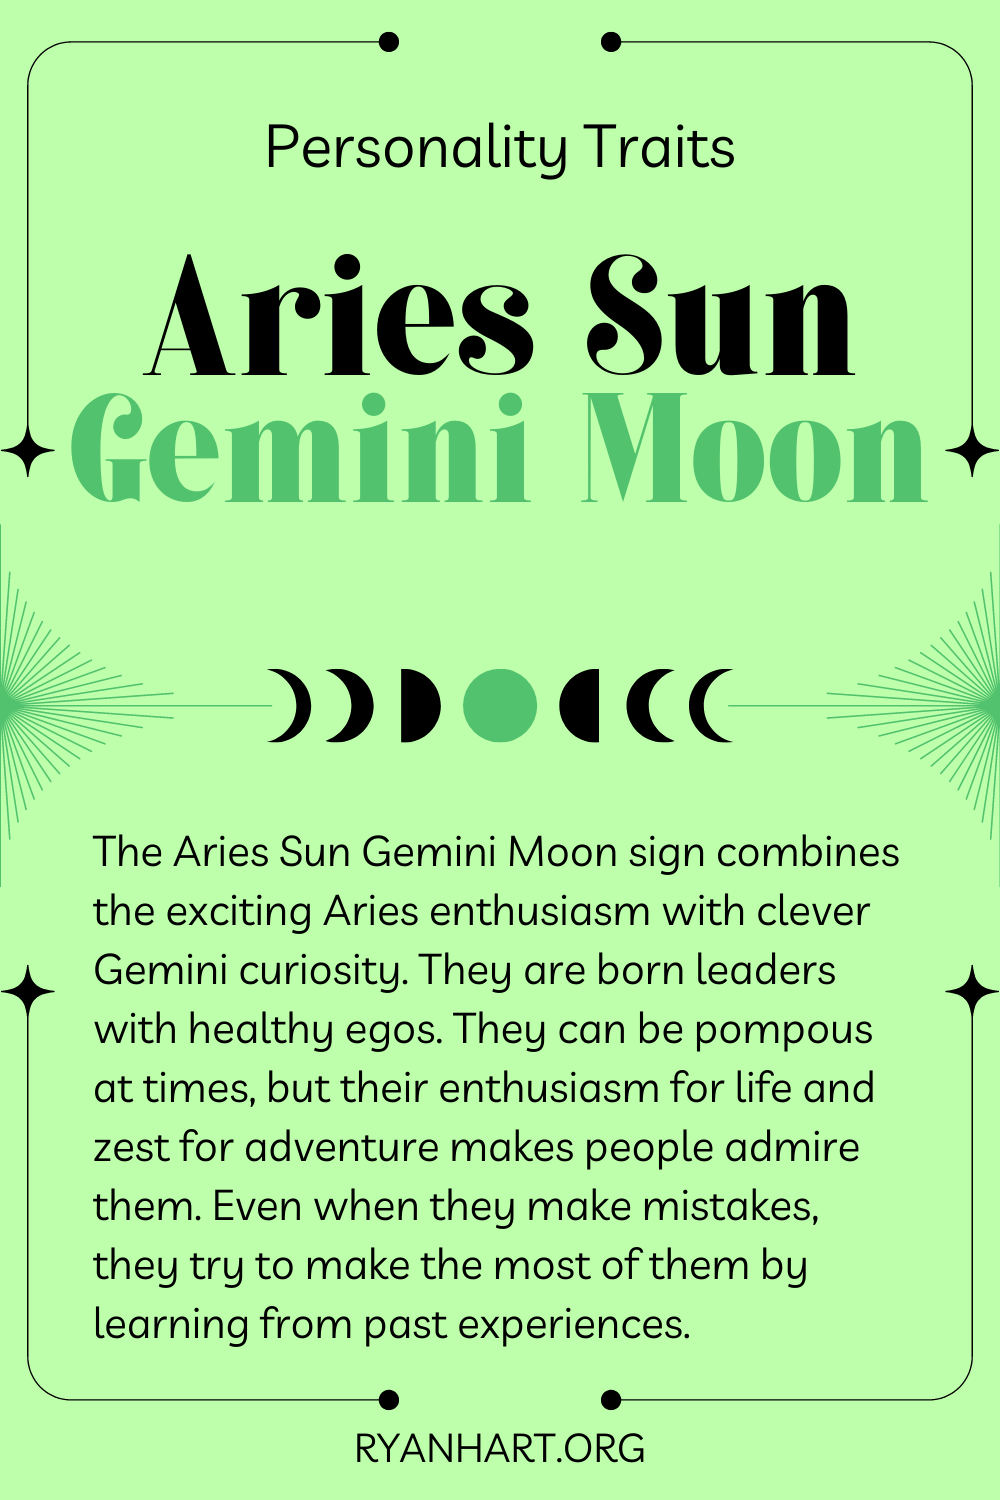  Ciri-ciri Personaliti Aries Sun Gemini Moon